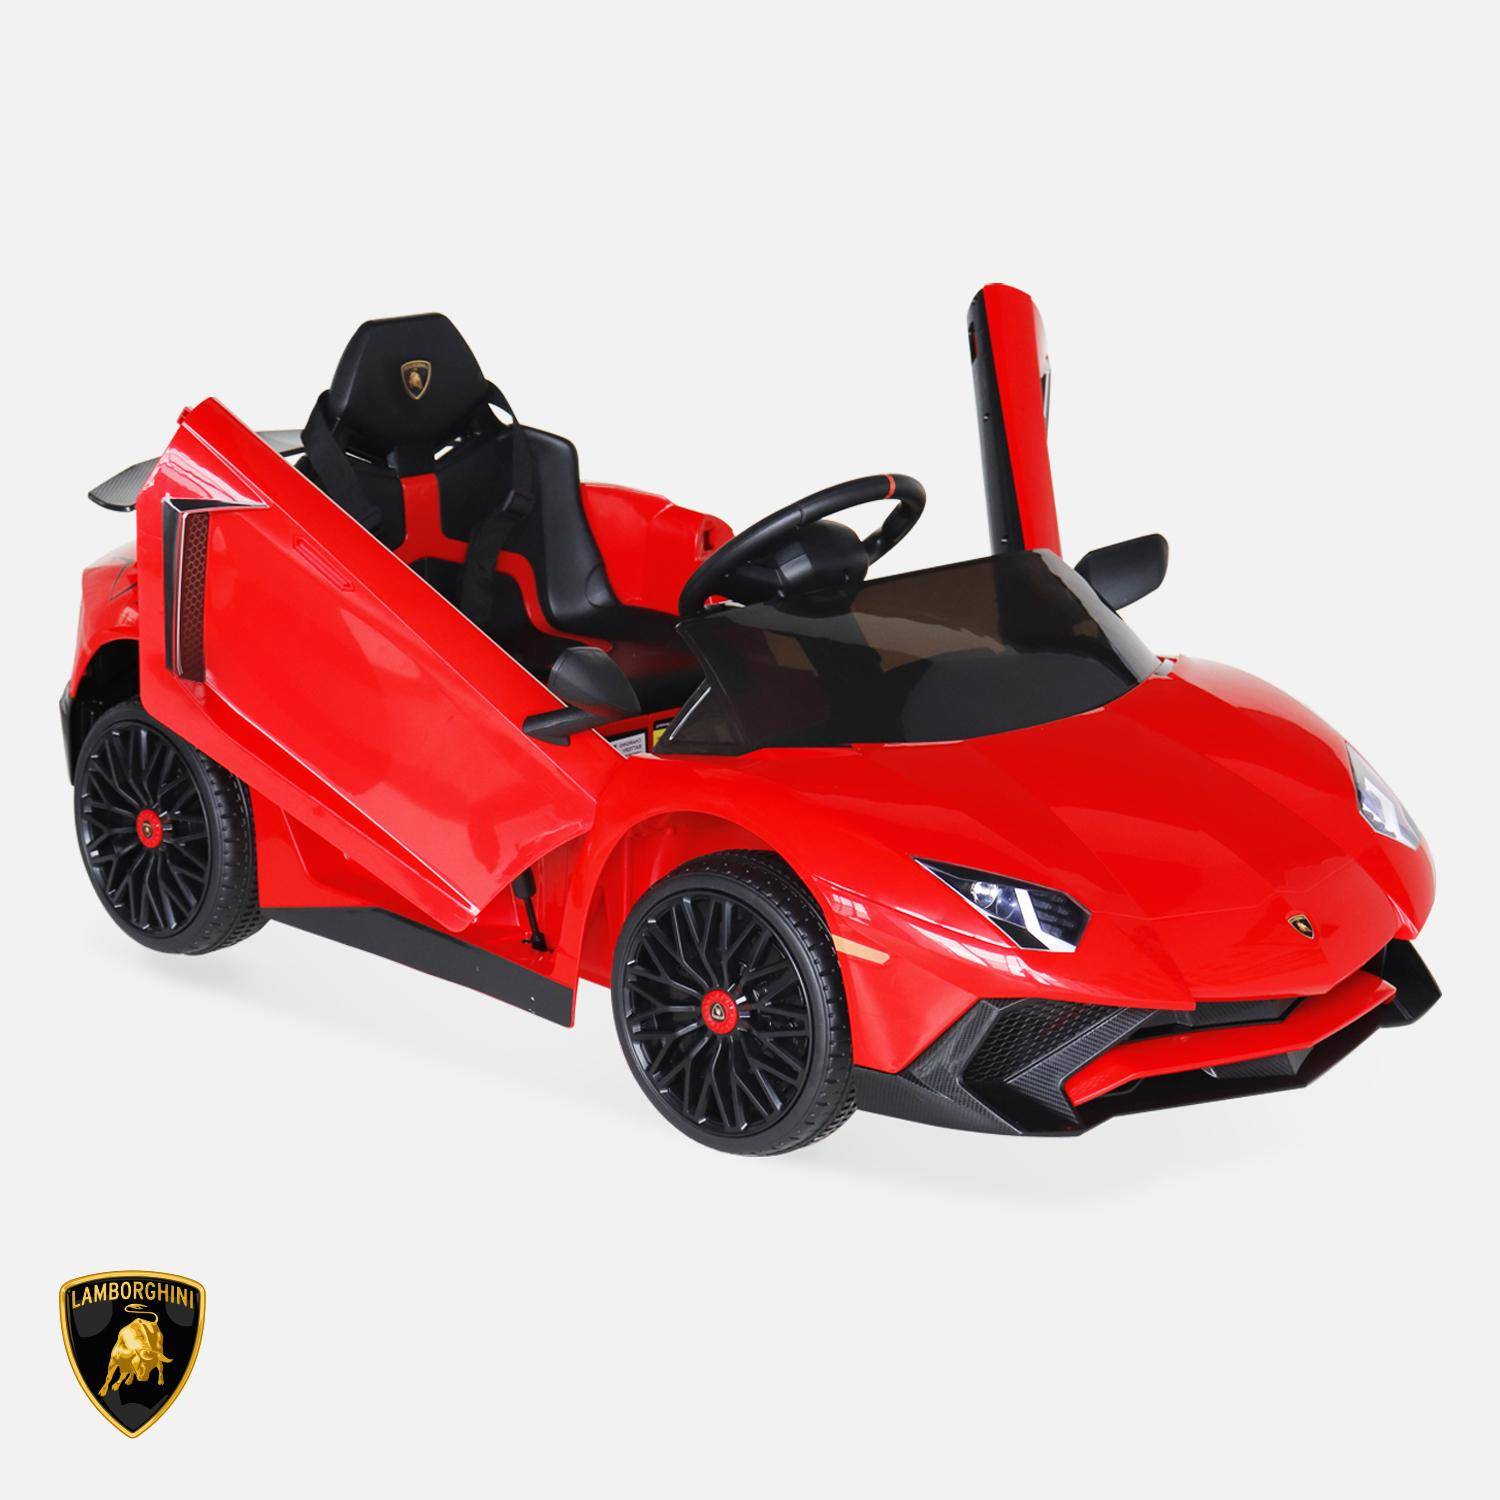 12V Lamborghini elektrische kinderauto, rood, 1 zitplaats, met autoradio, afstandsbediening, MP3, USB-poort en functionele koplampen,sweeek,Photo2